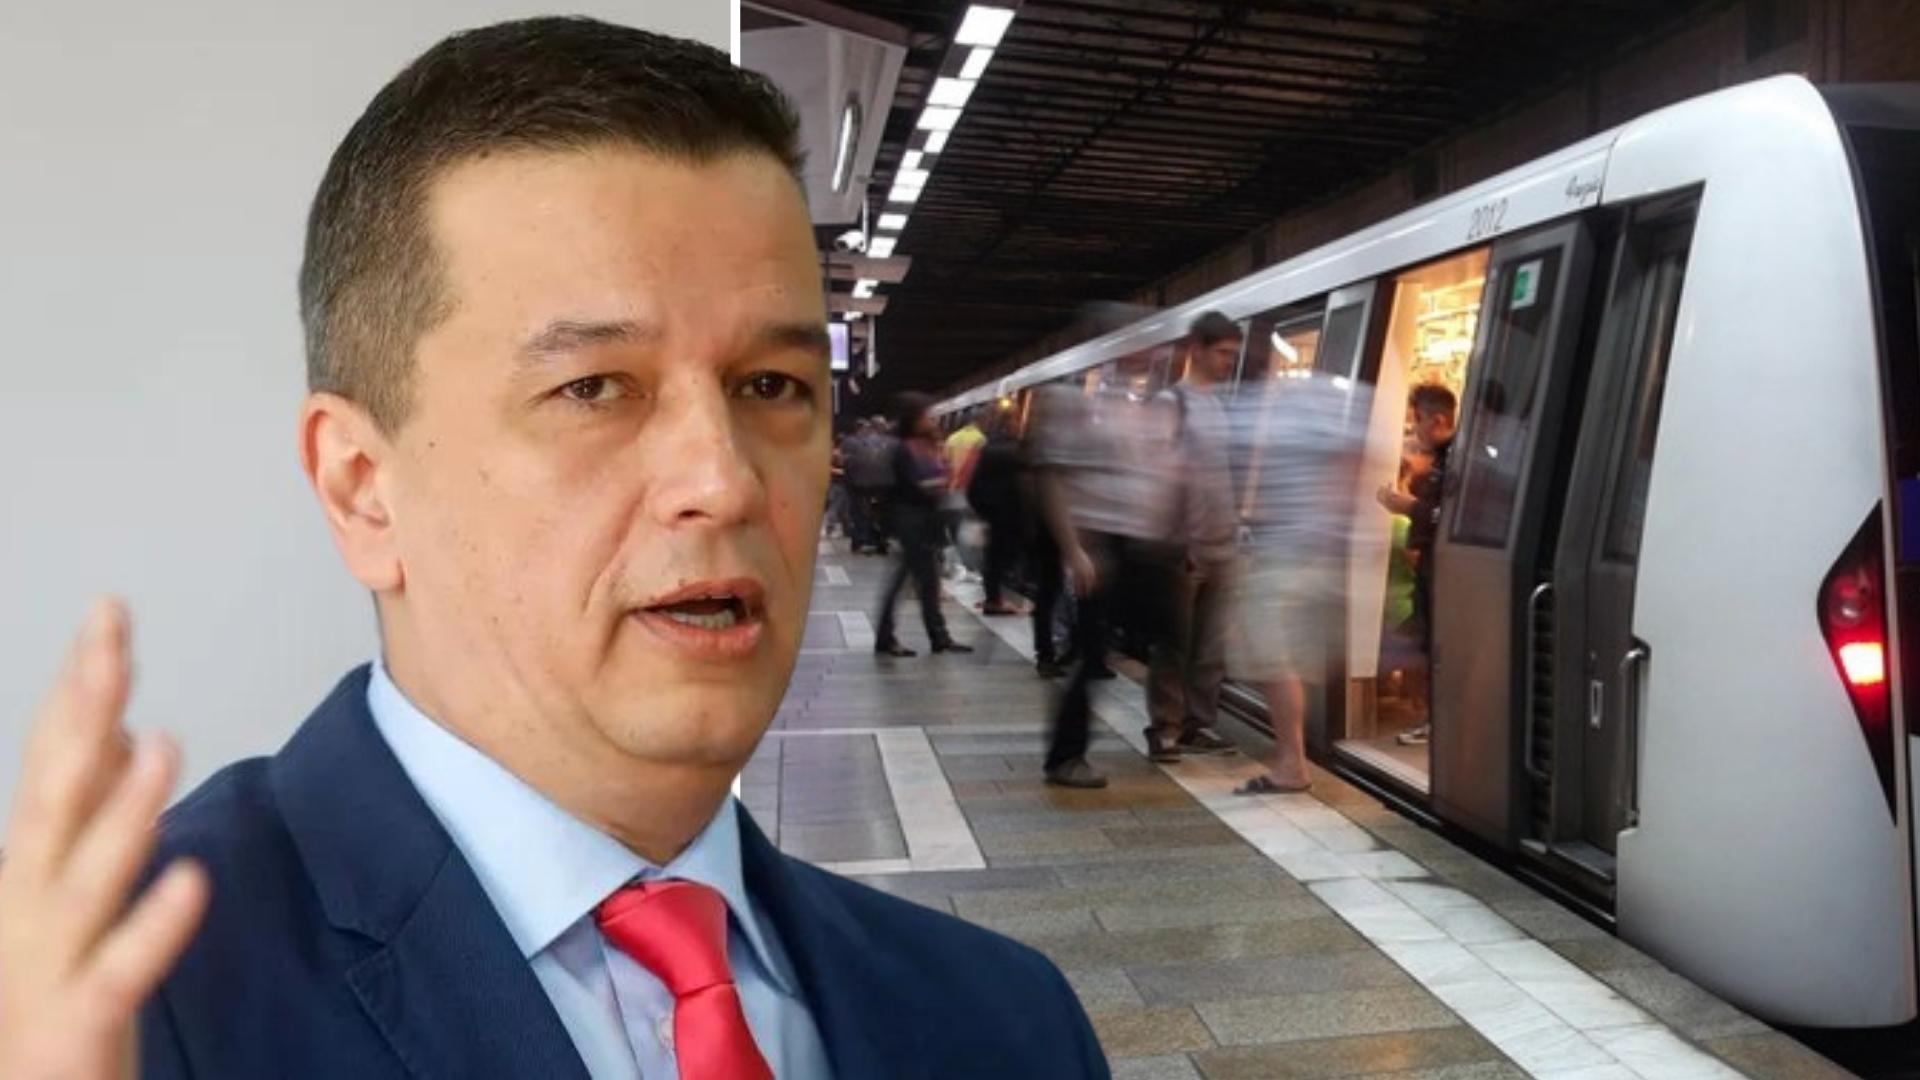 Ministrul Transporturilor despre Metroul din Cluj: ”Se face! Am discuții dese cu Emil Boc pe acest proiect” 1